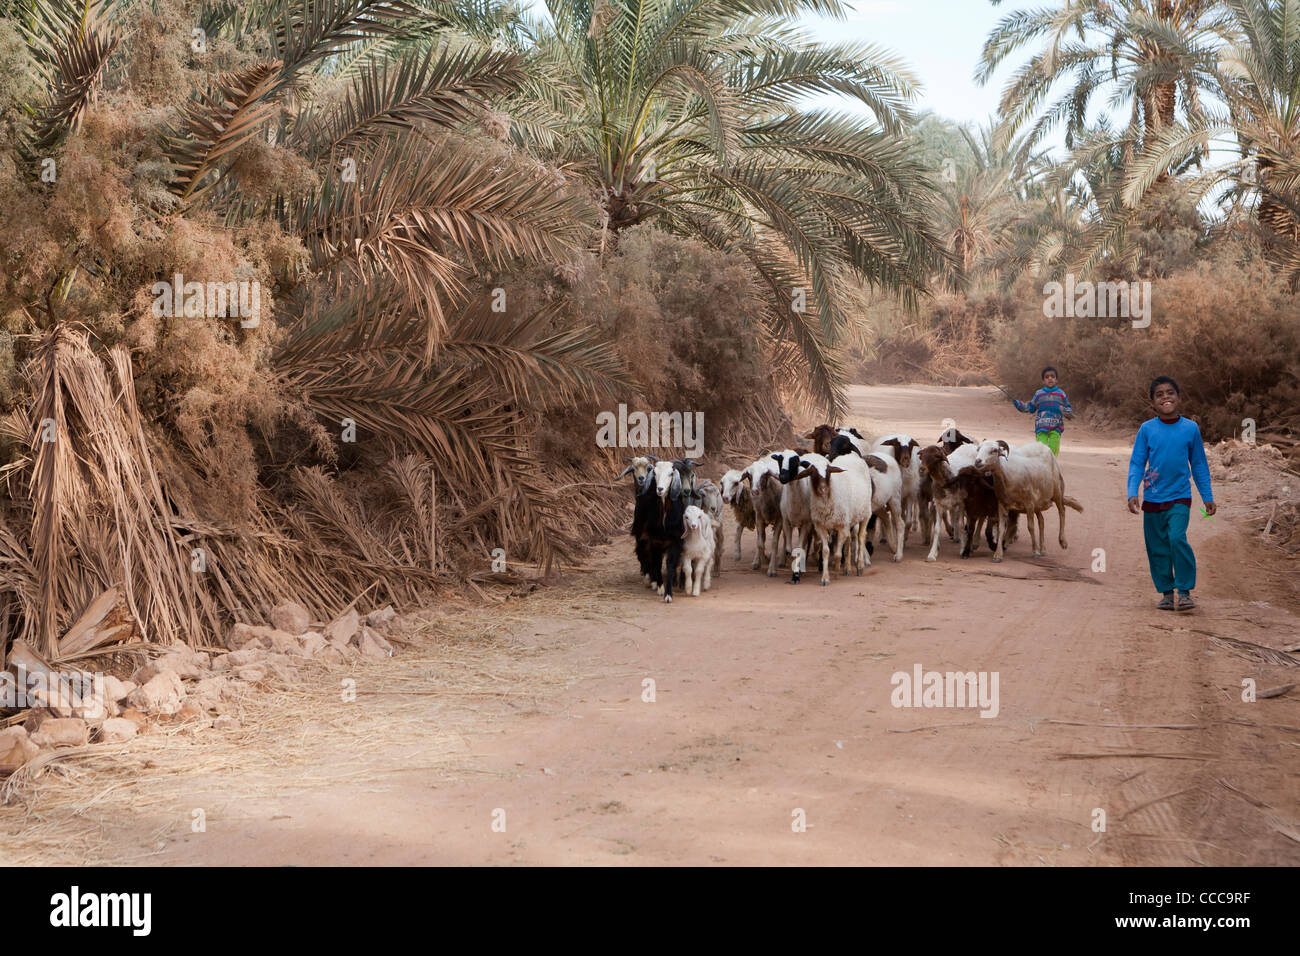 Jeune garçon marche avec troupeau de moutons dans la région de Dakhla Oasis, Désert occidental de l'Égypte Banque D'Images